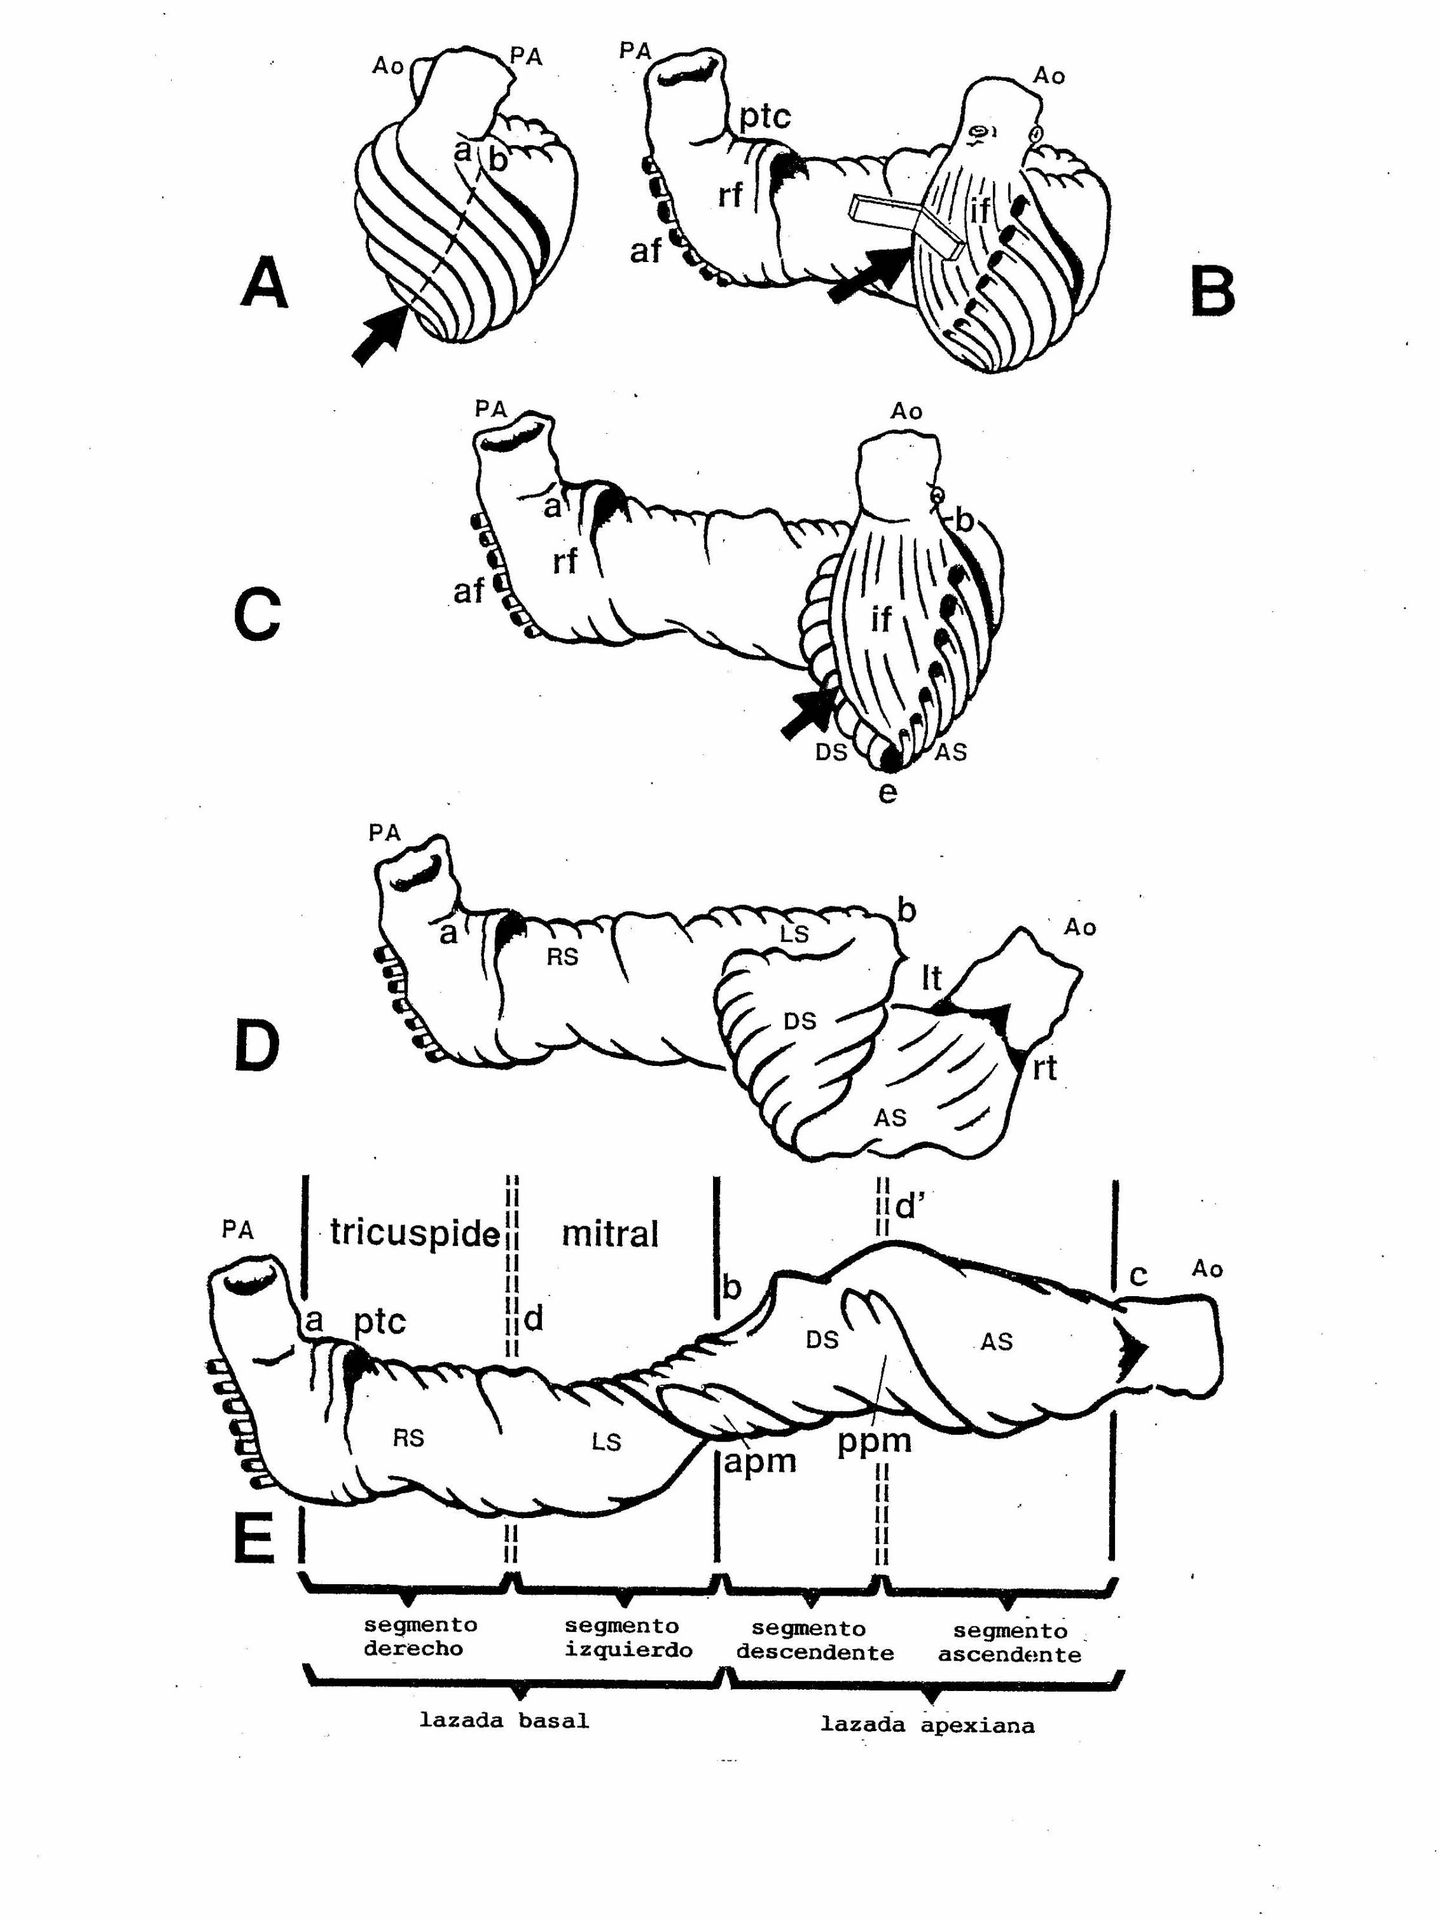 La banda o toalla de fibras musculares descrita por Torrent-Guasp.